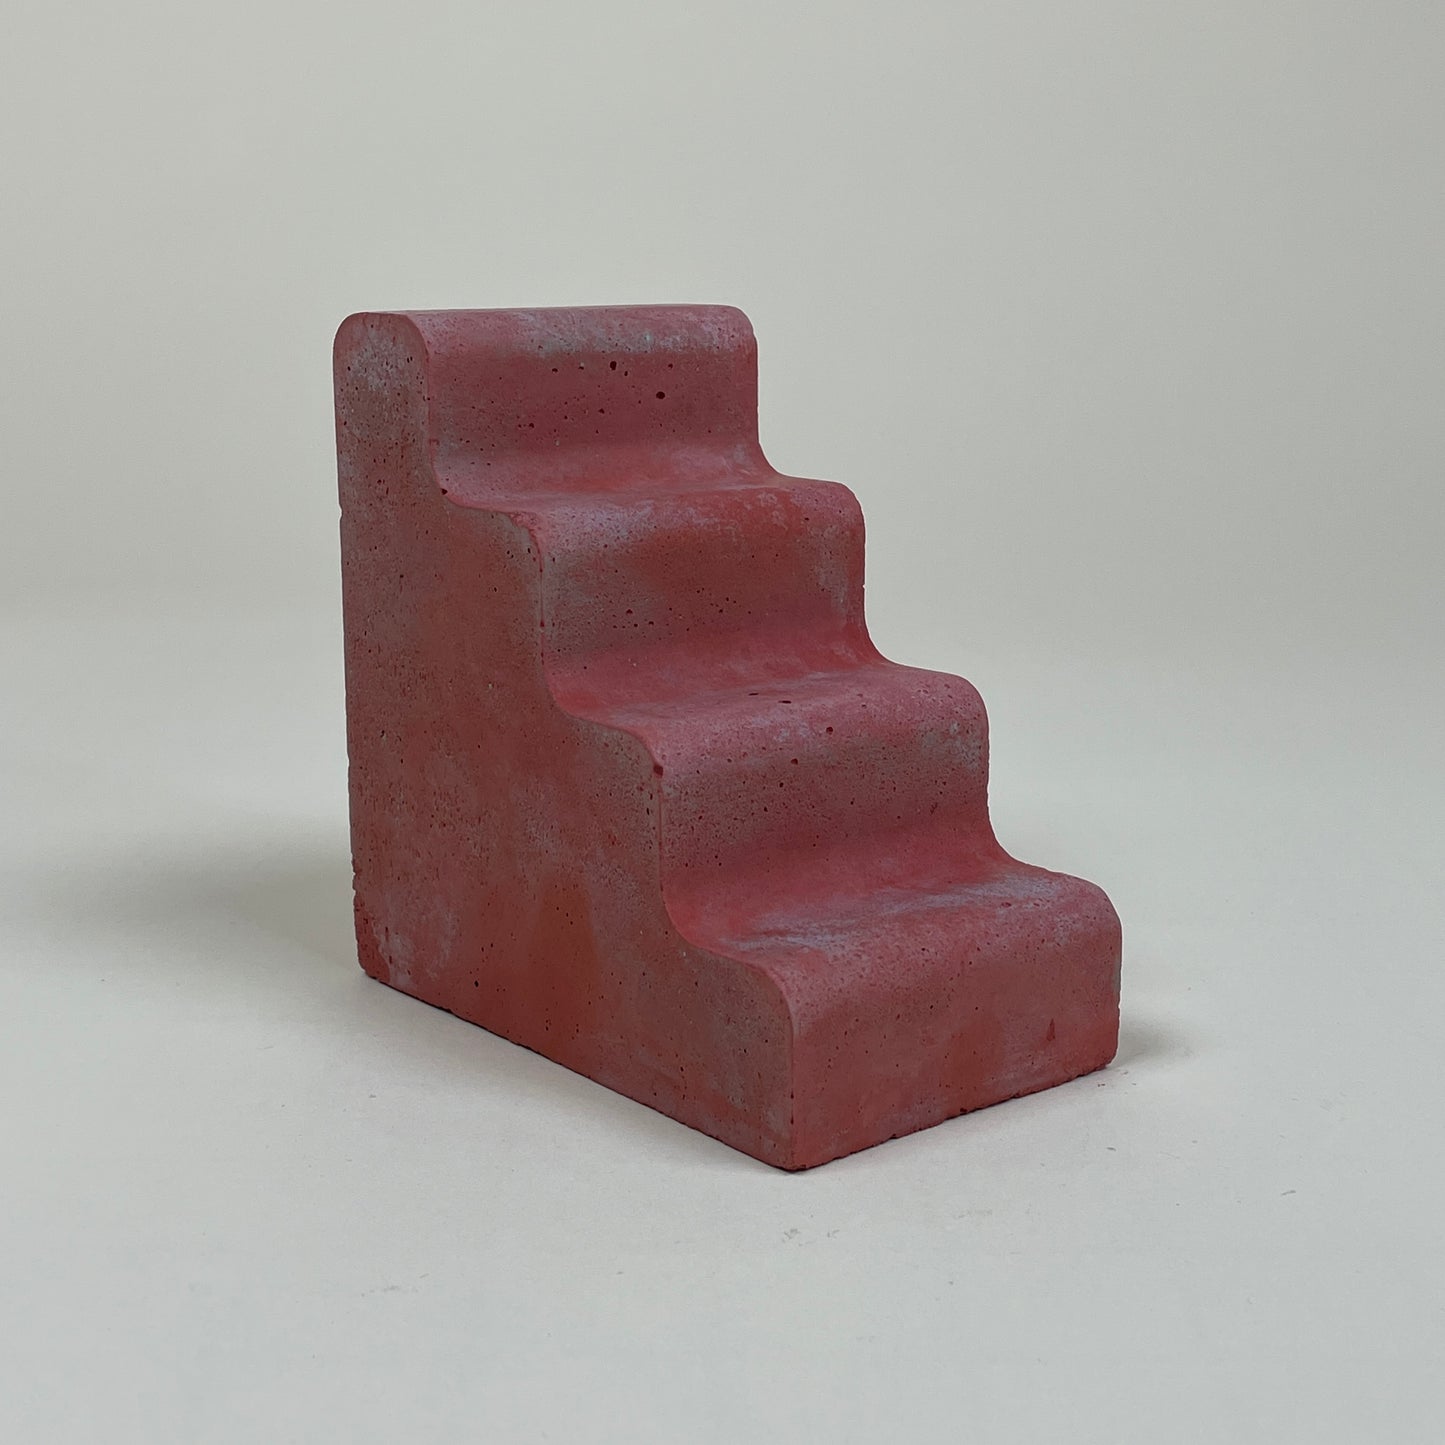 Red concrete bookend by Clara von Zweigbergk